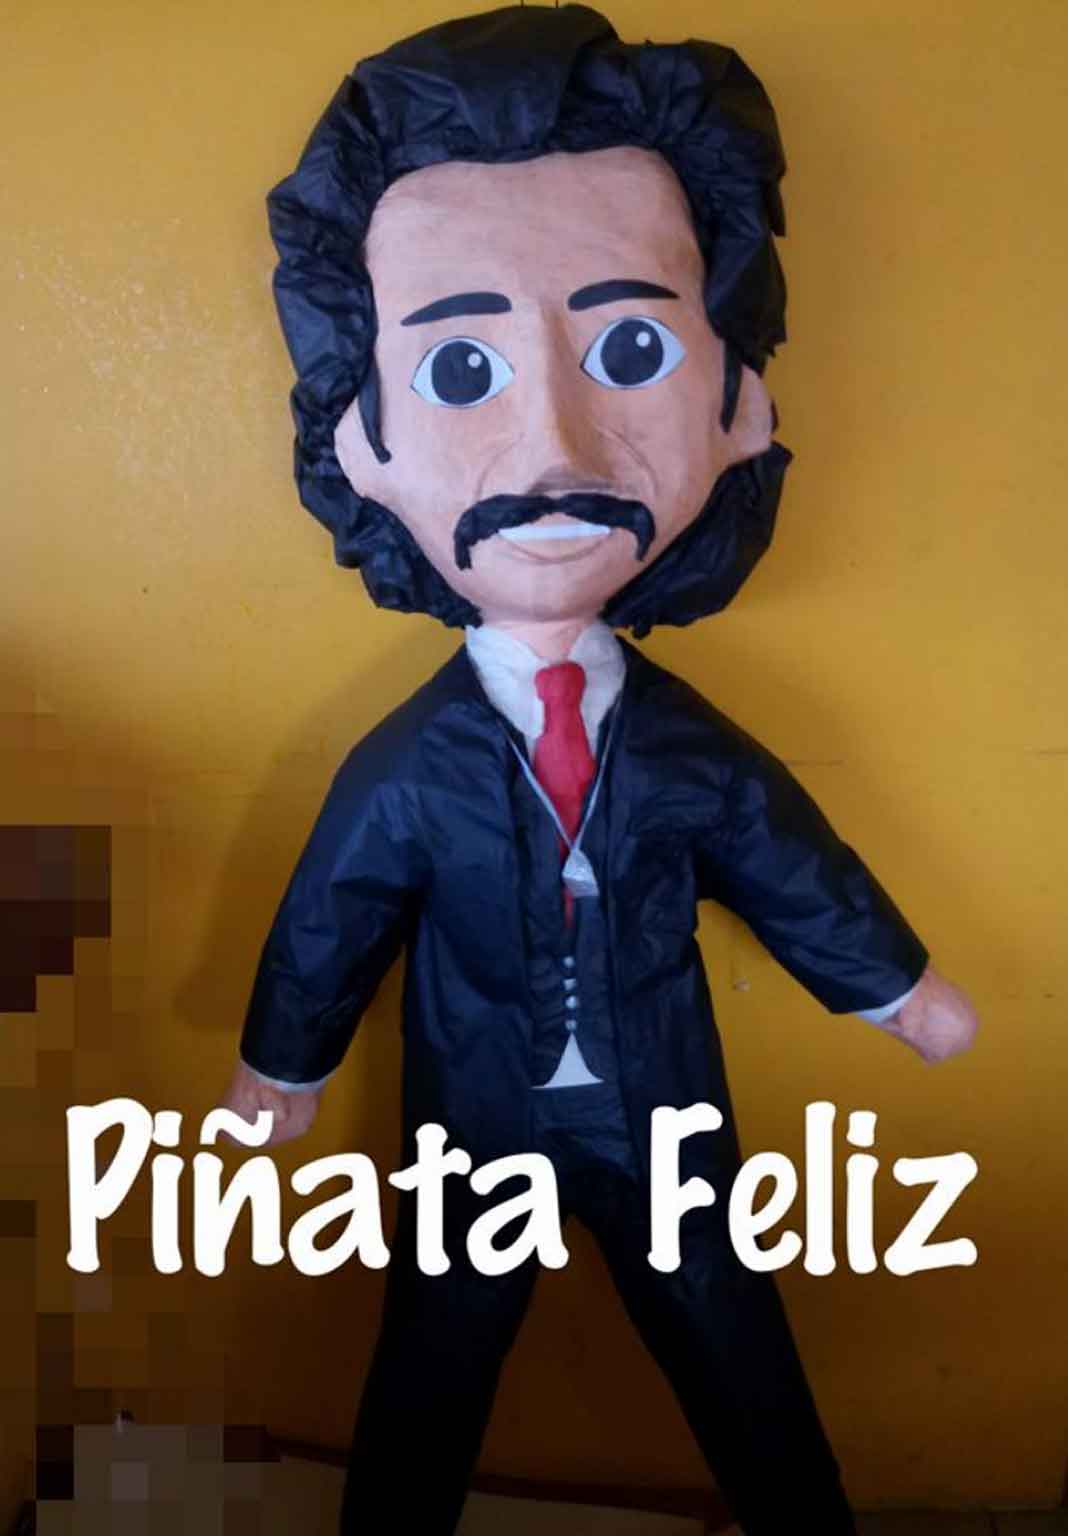 La tienda Piñata Feliz de Ciudad Juárez puso a la venta la piñata de Luisito Rey, en dos presentaciones